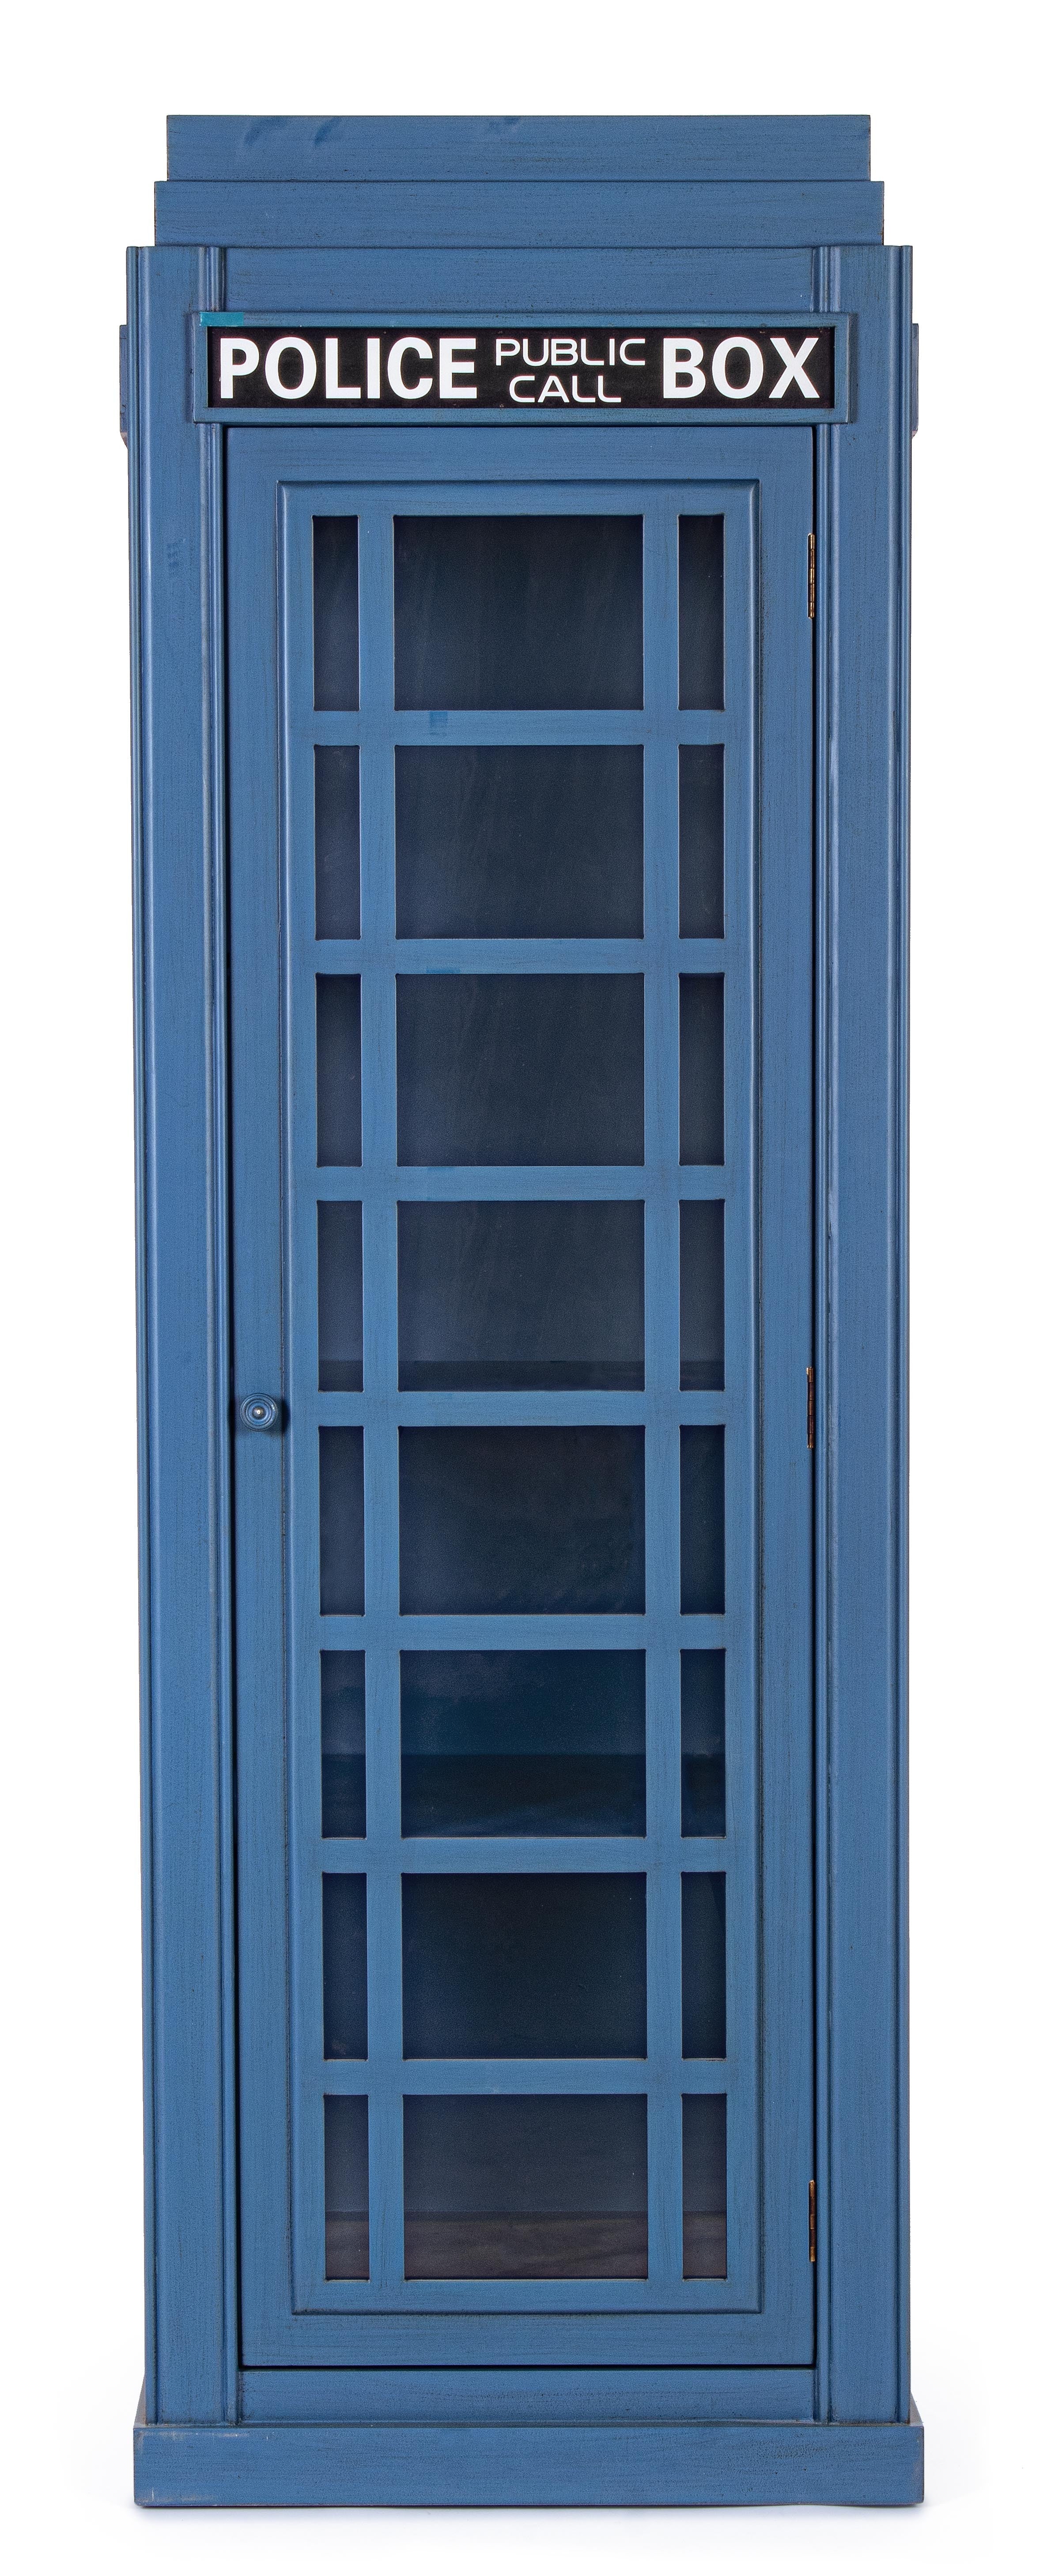 Libreria a vetrina in stile cabina telefonica inglese in legno